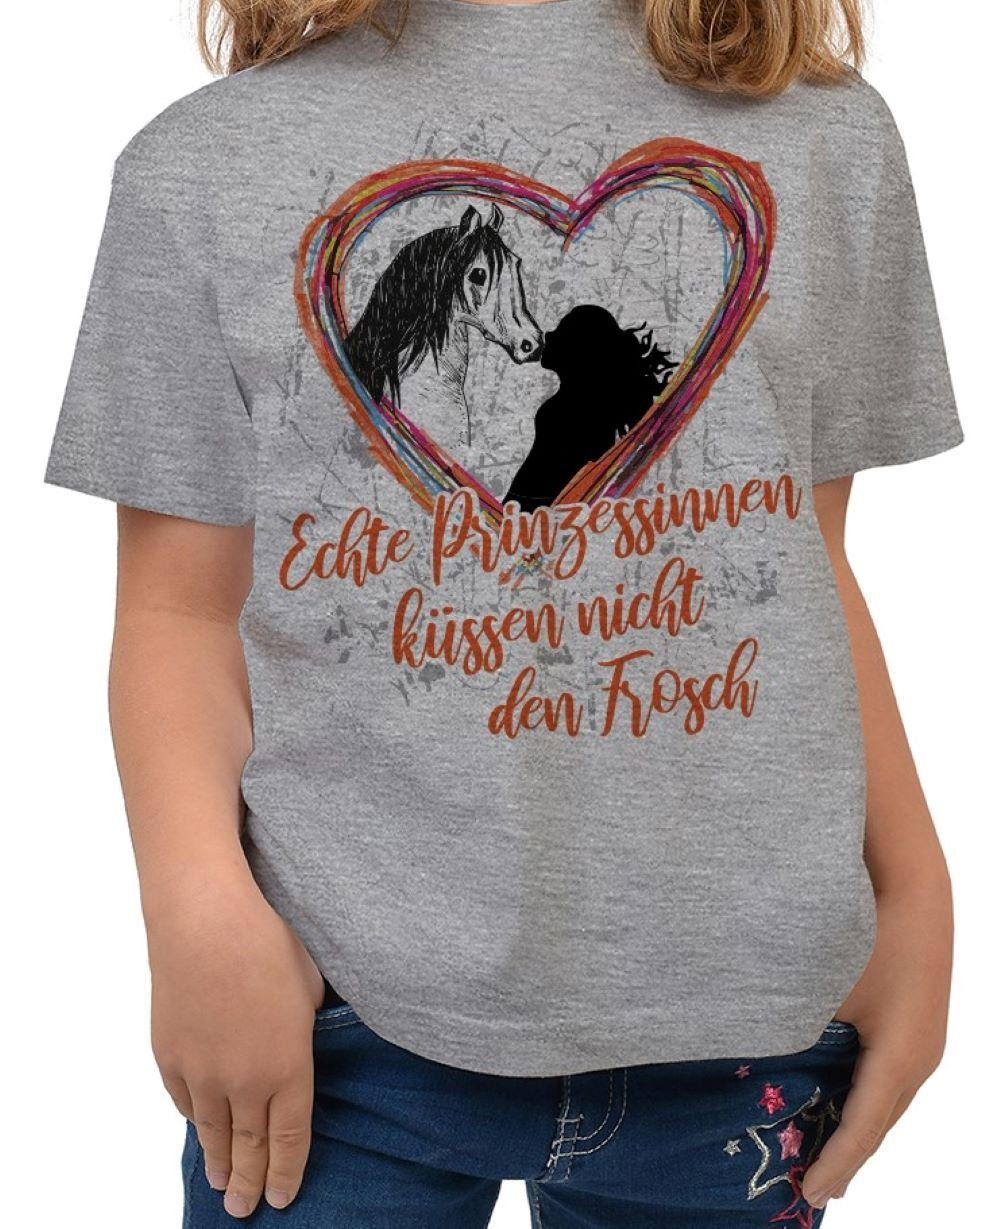 Tini - Shirts T-Shirt Mädchen Pferde Motiv Tshirt Pferde Sprüche Kinder Shirt: Echte Prinzessinnen küssen .... dunkelgrau-meliert